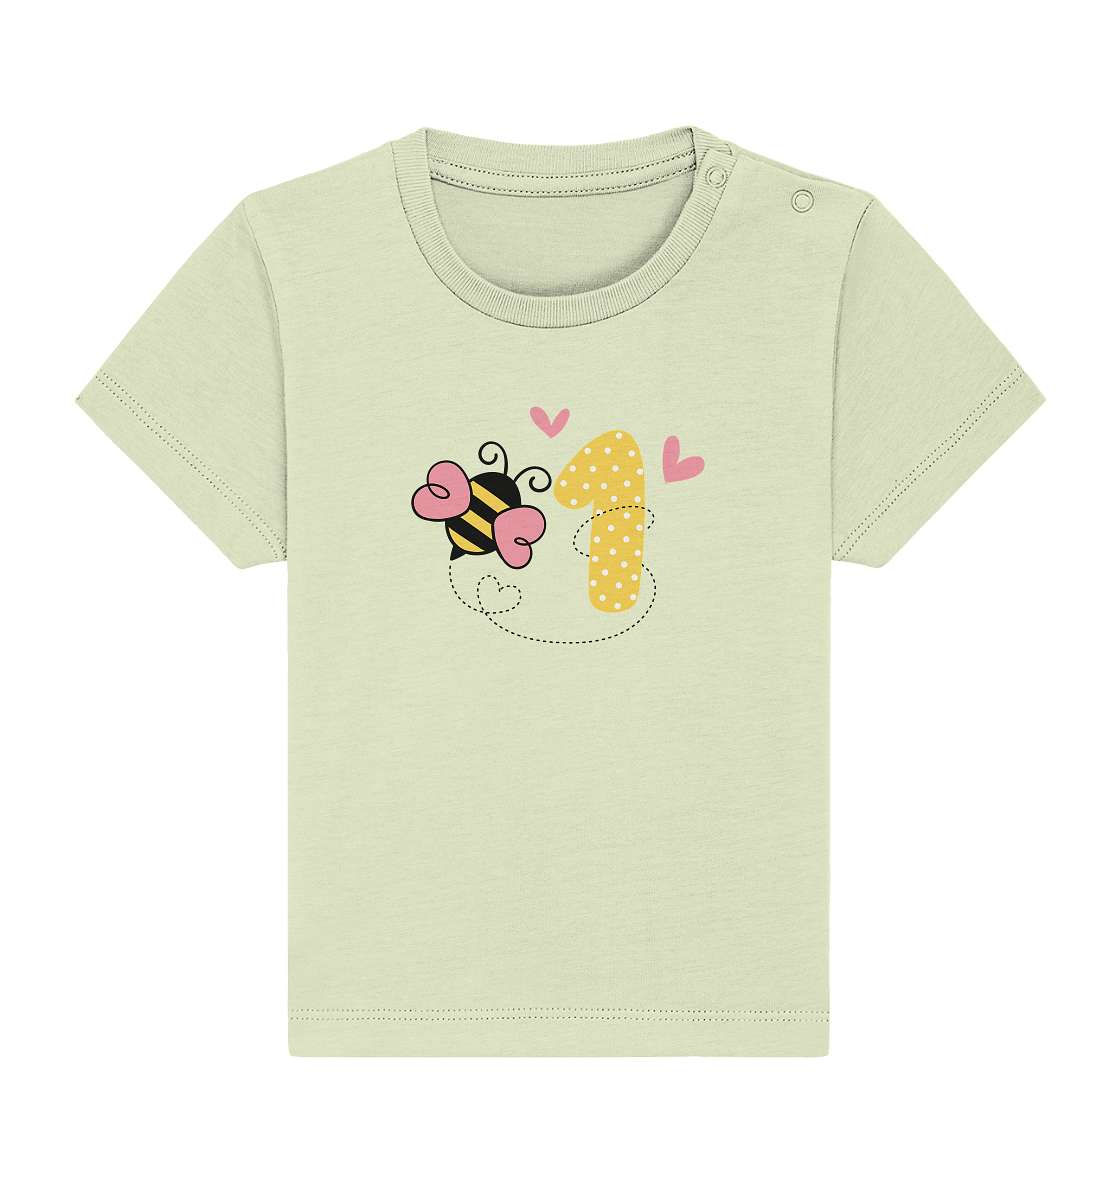 Baby erster Geburtstag - Geburtstags Geschenk - Baby Organic Shirt